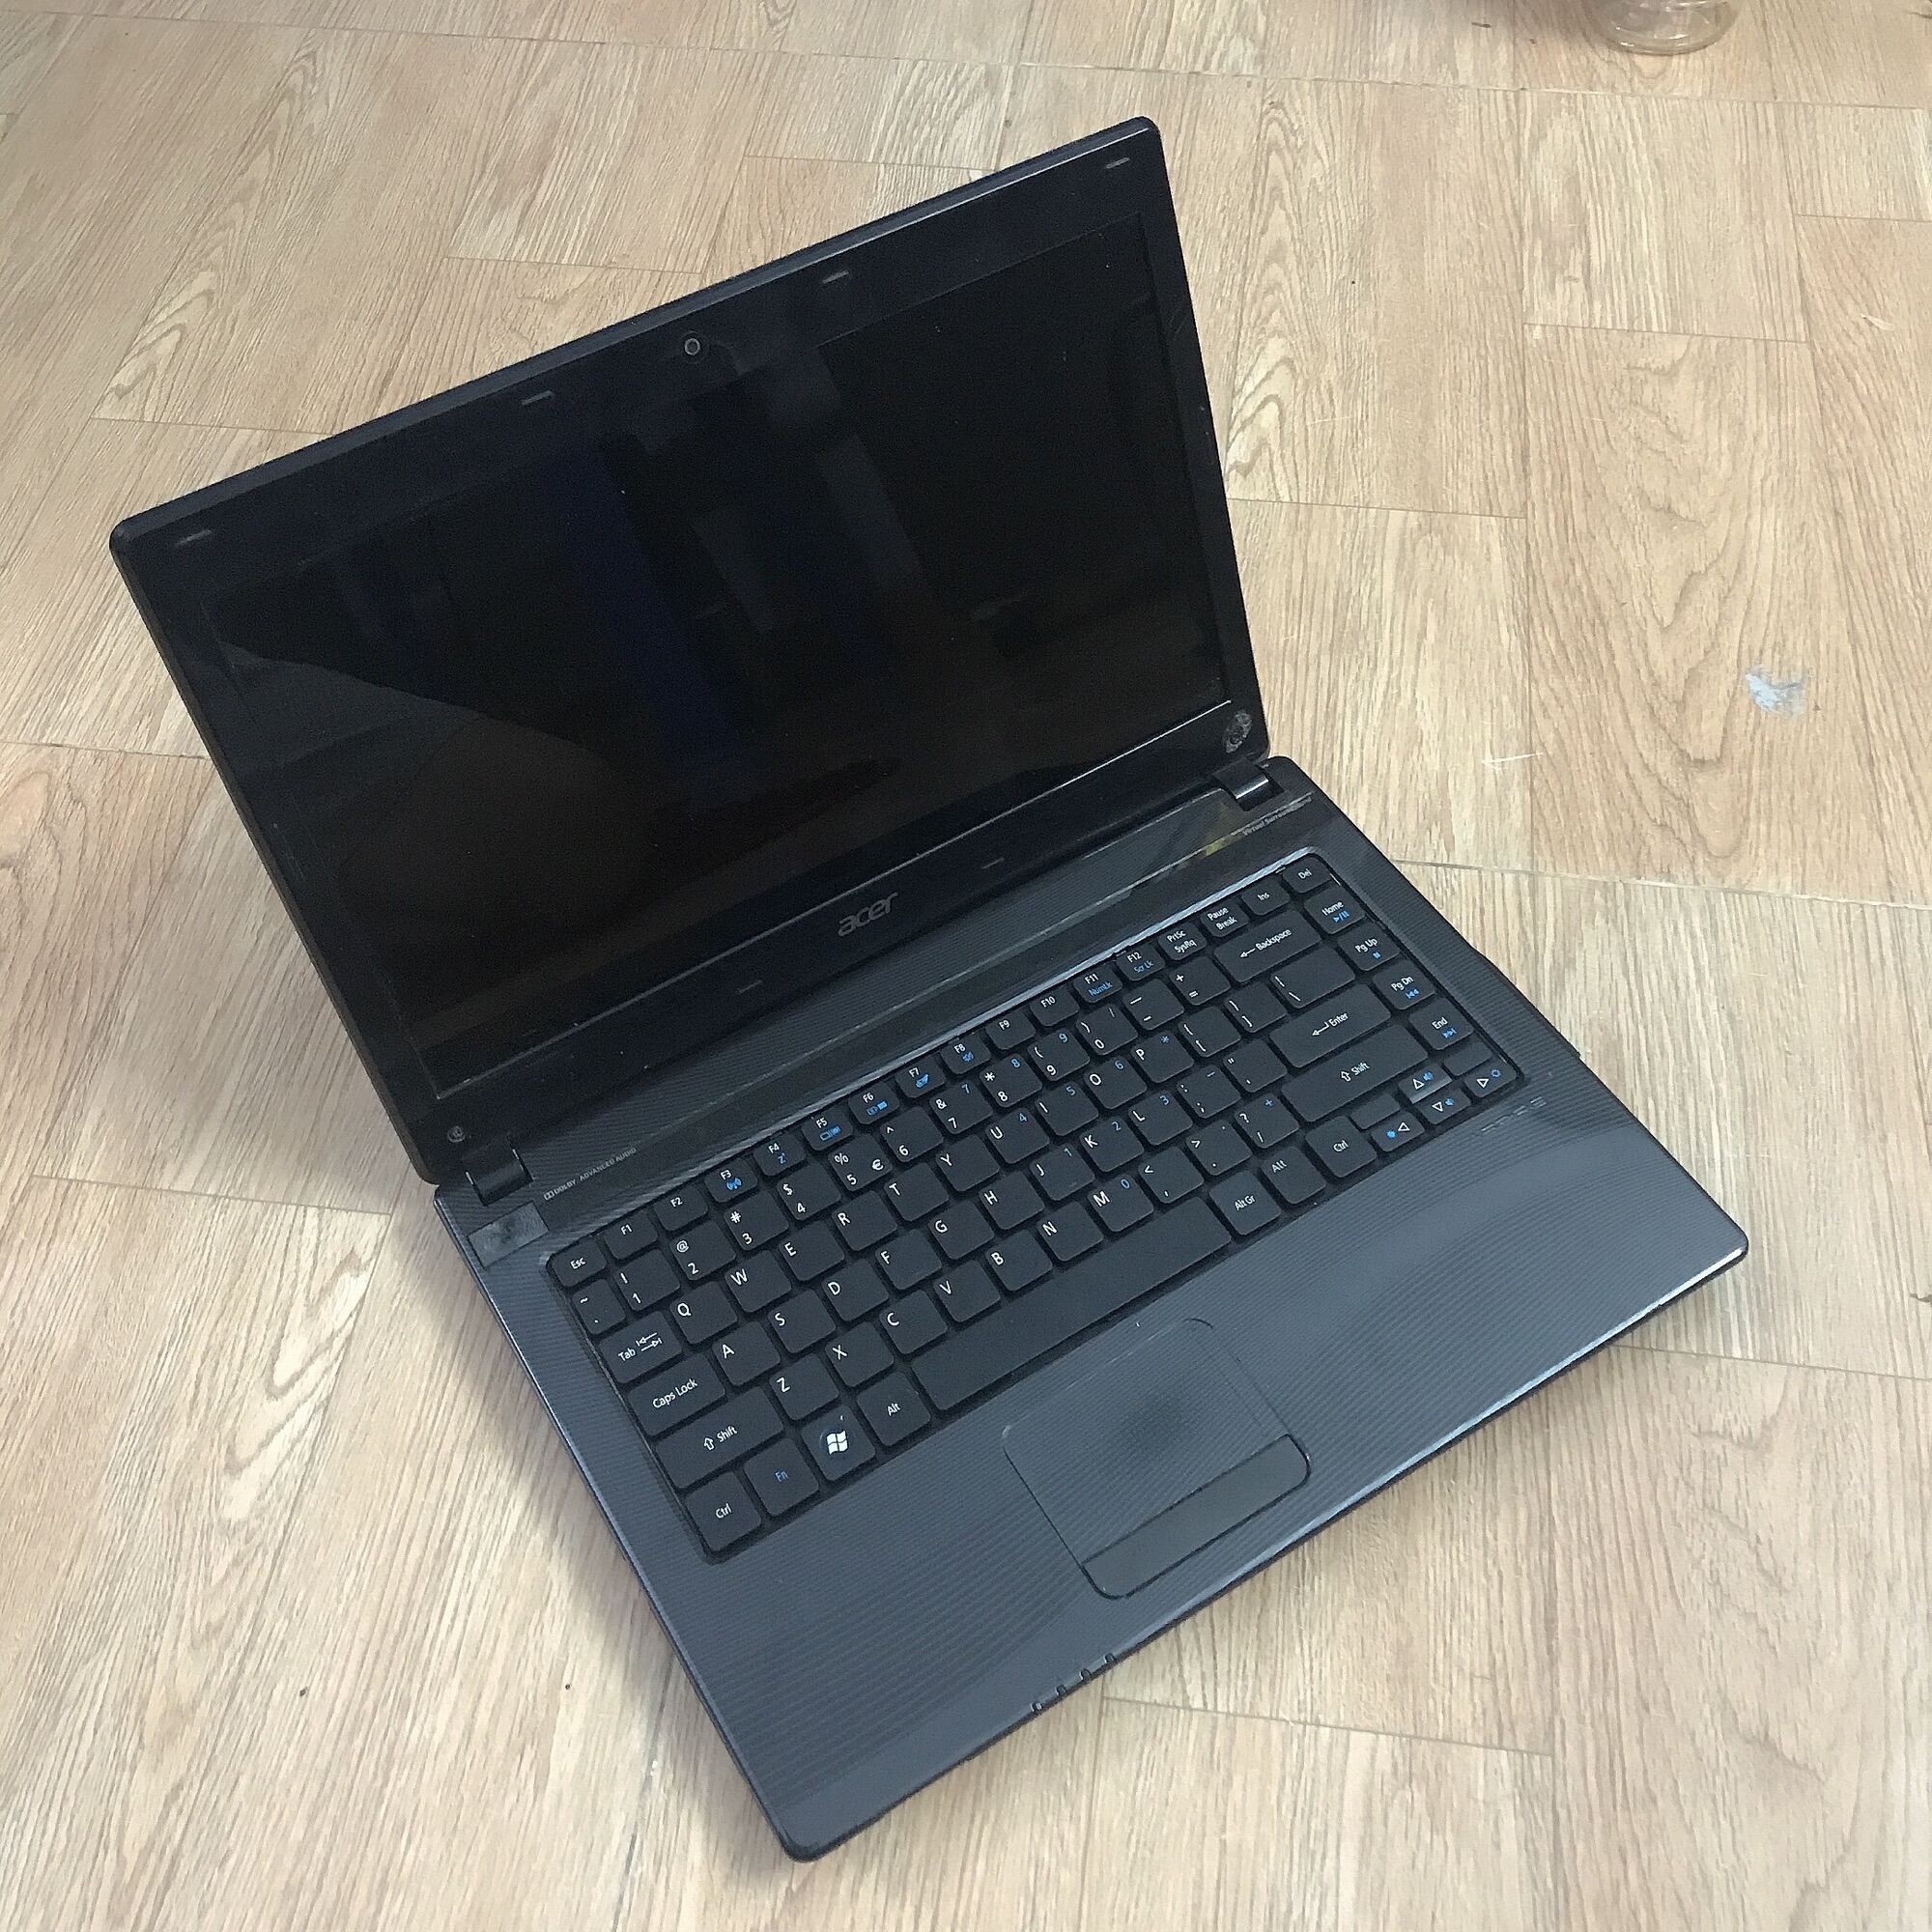 Bảng giá Laptop Acer Aspire 4752 Core i3 Ram 3Gb, Hdd 320gb( Văn Phòng, chơi game) Phong Vũ